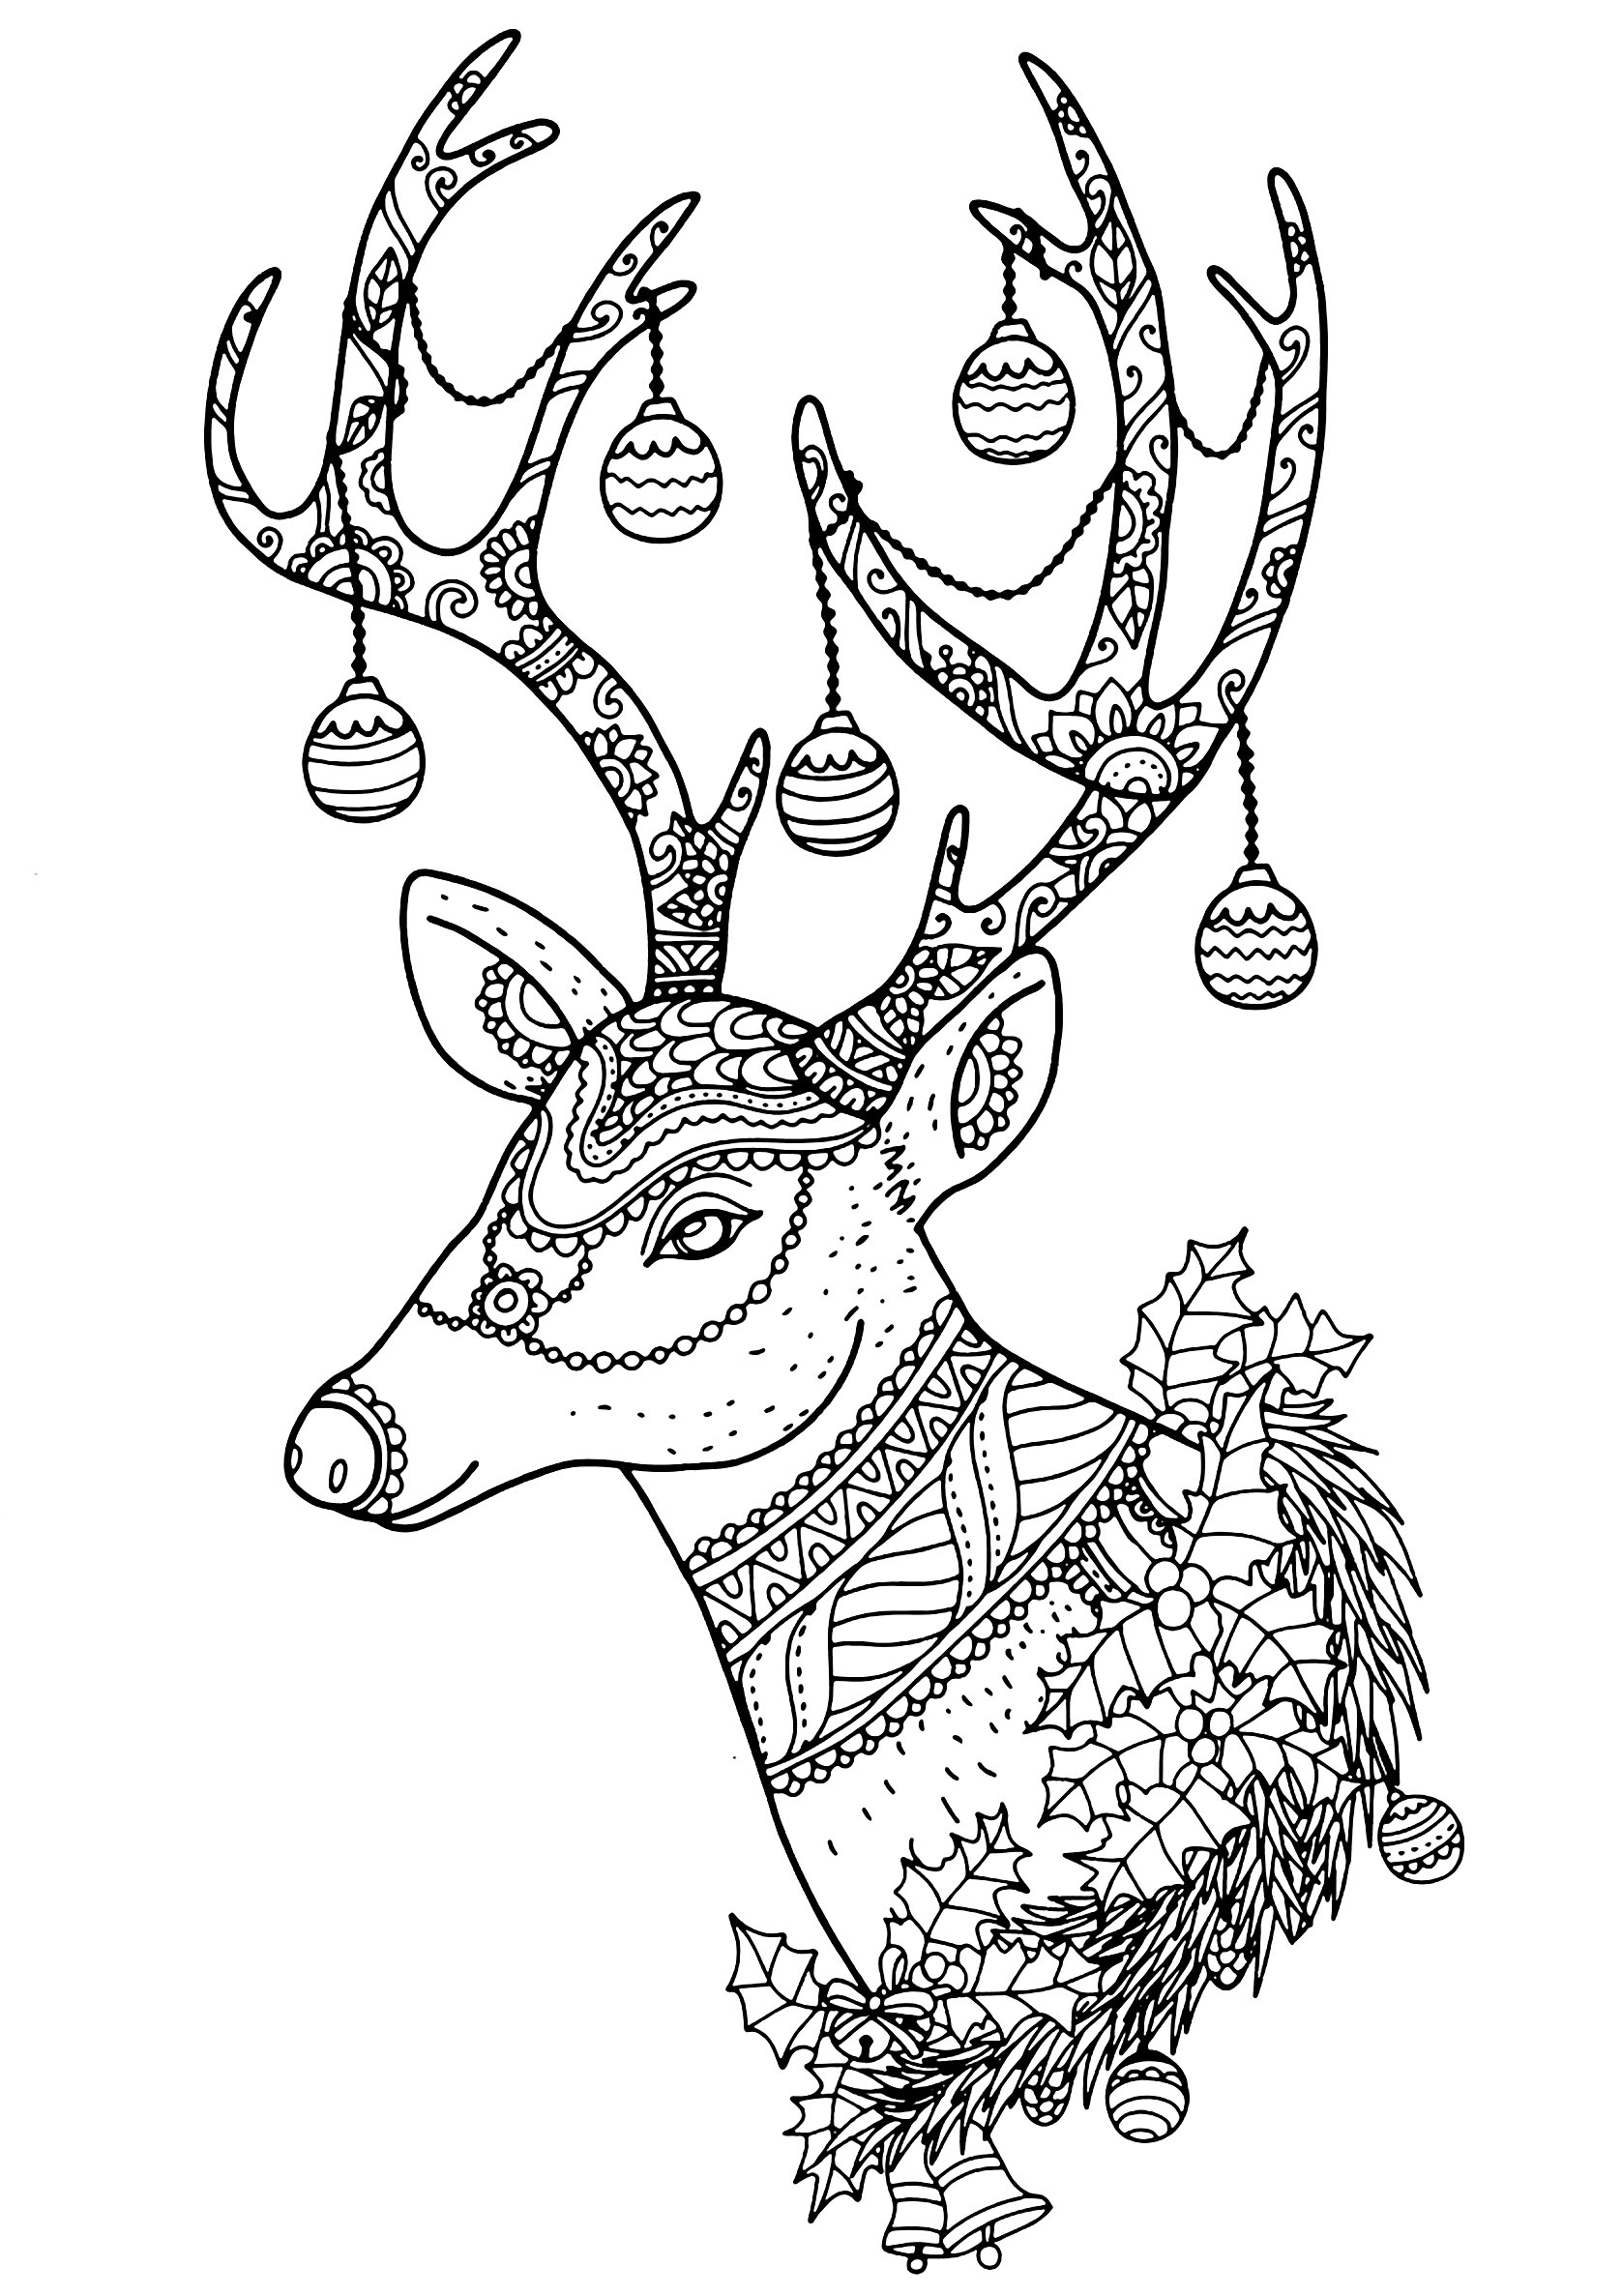 Desenhos simples para colorir gratuitos para crianças de Natal, Artista : Nontachai Hengtragool   Fonte : 123rf